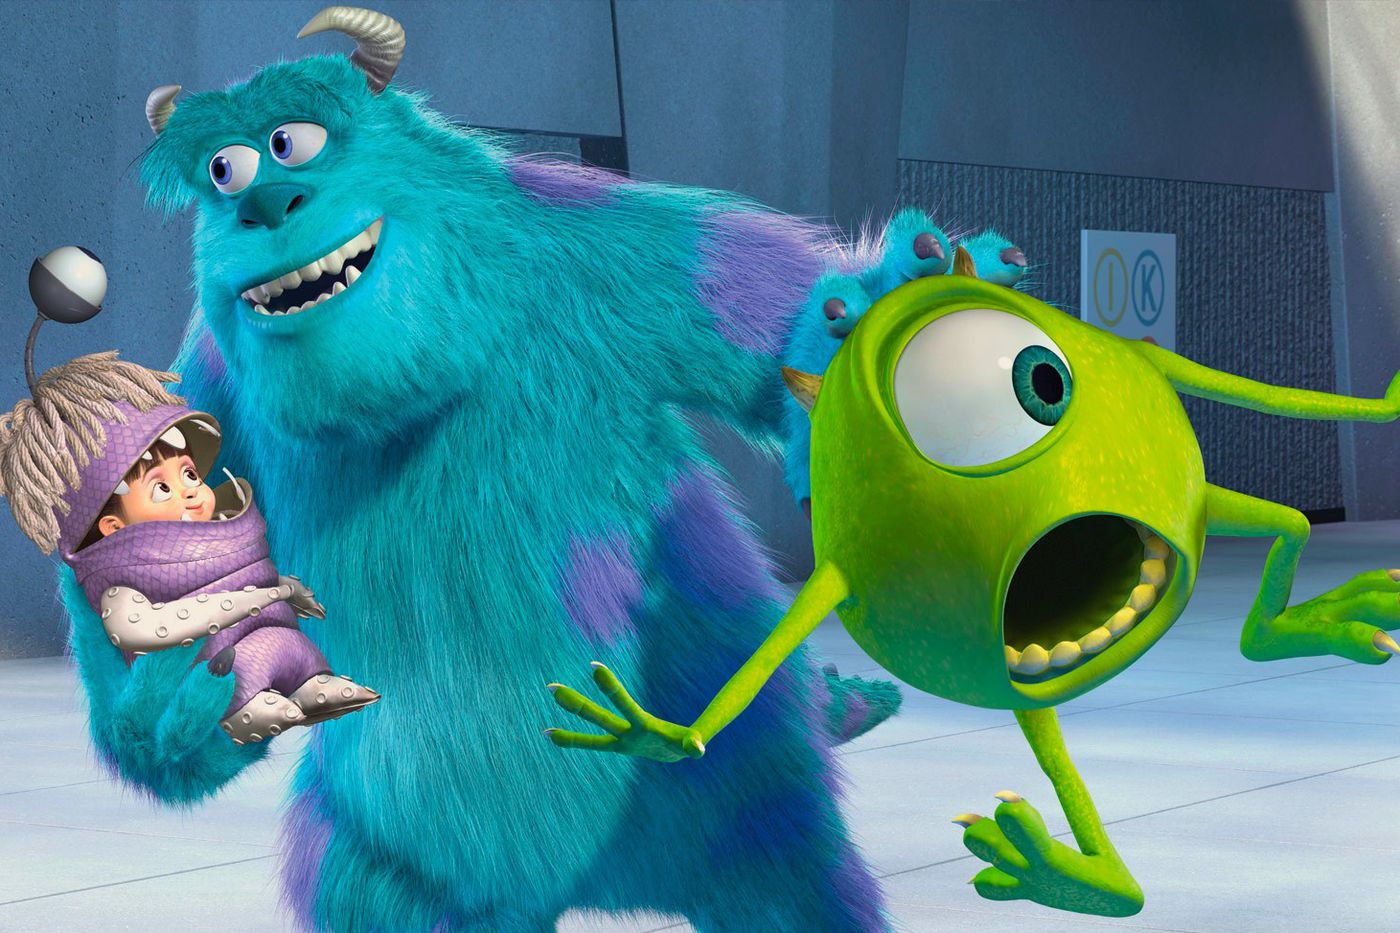 Monstruos S.A.': Esta es la razón por la que Pixar hizo una precuela en  lugar de una secuela - Noticias de cine 